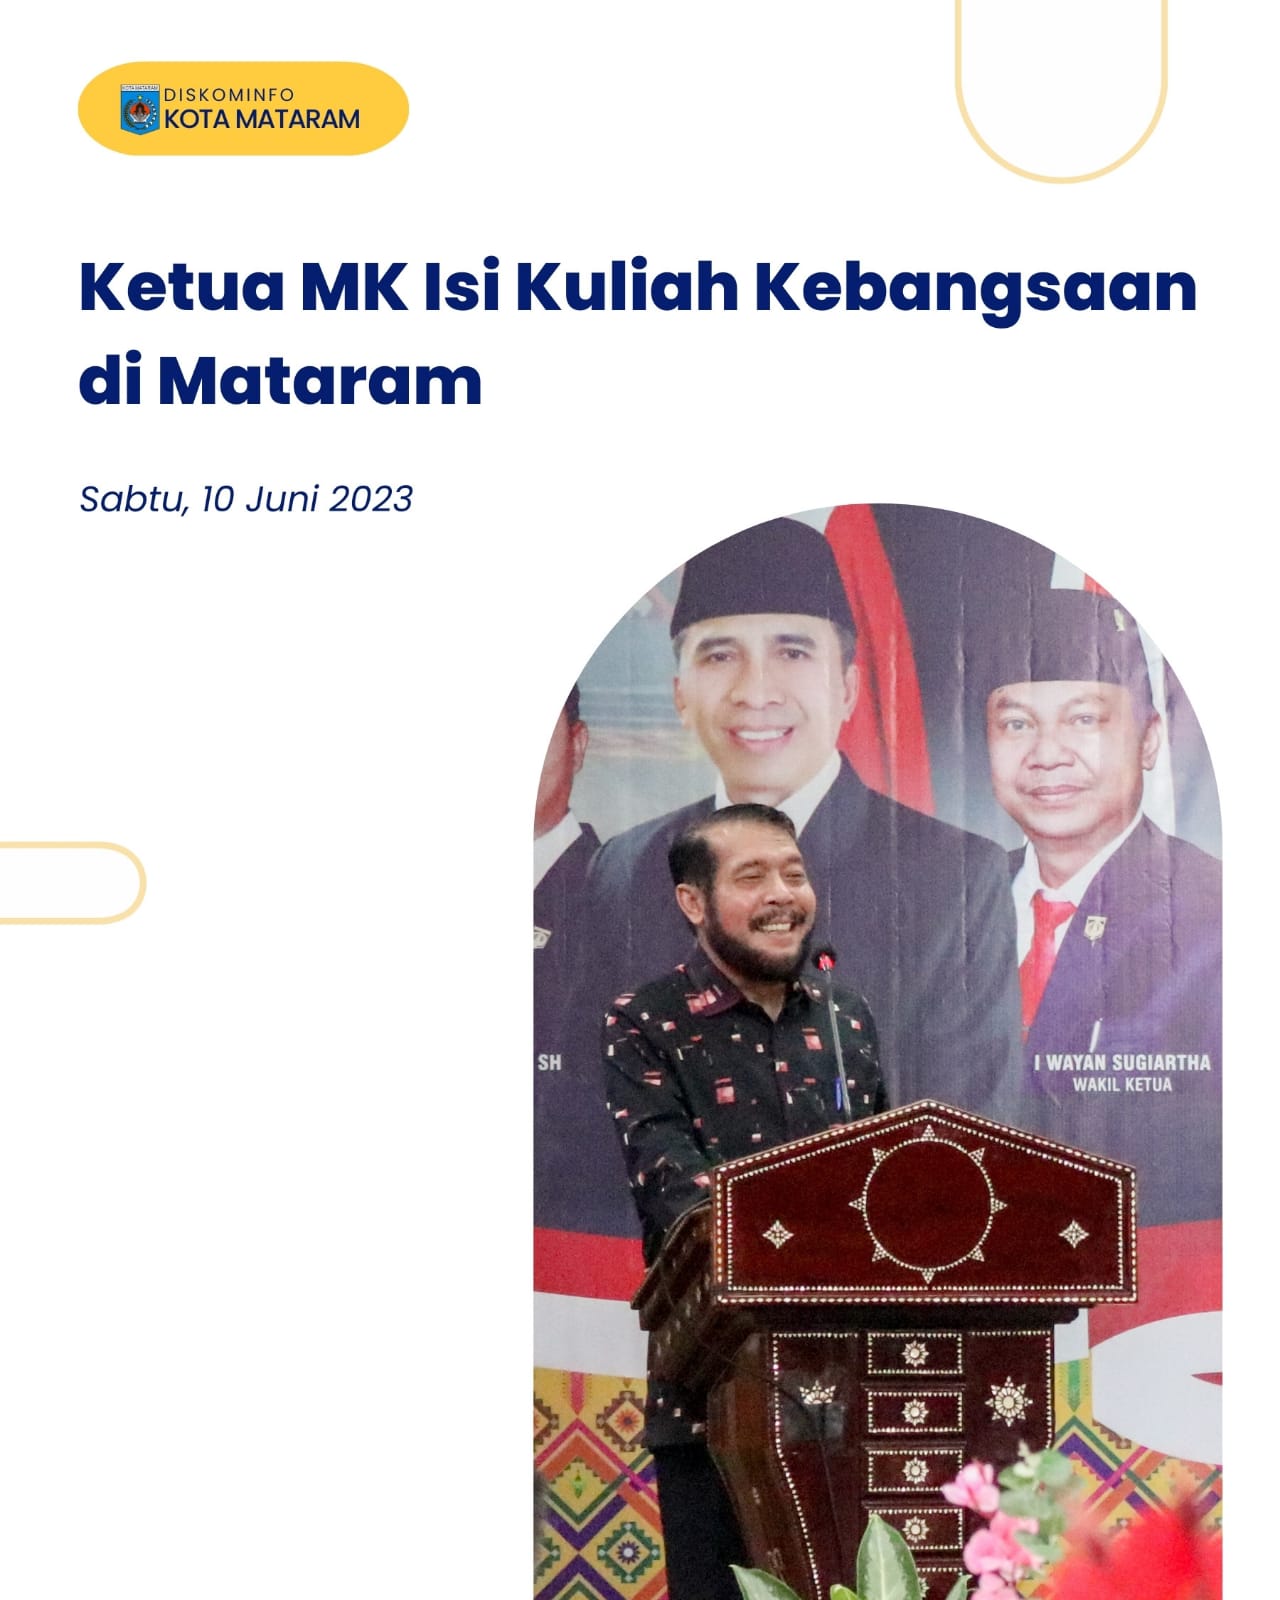 Ketua MK Isi Kuliah Kebangsaan Di Mataram